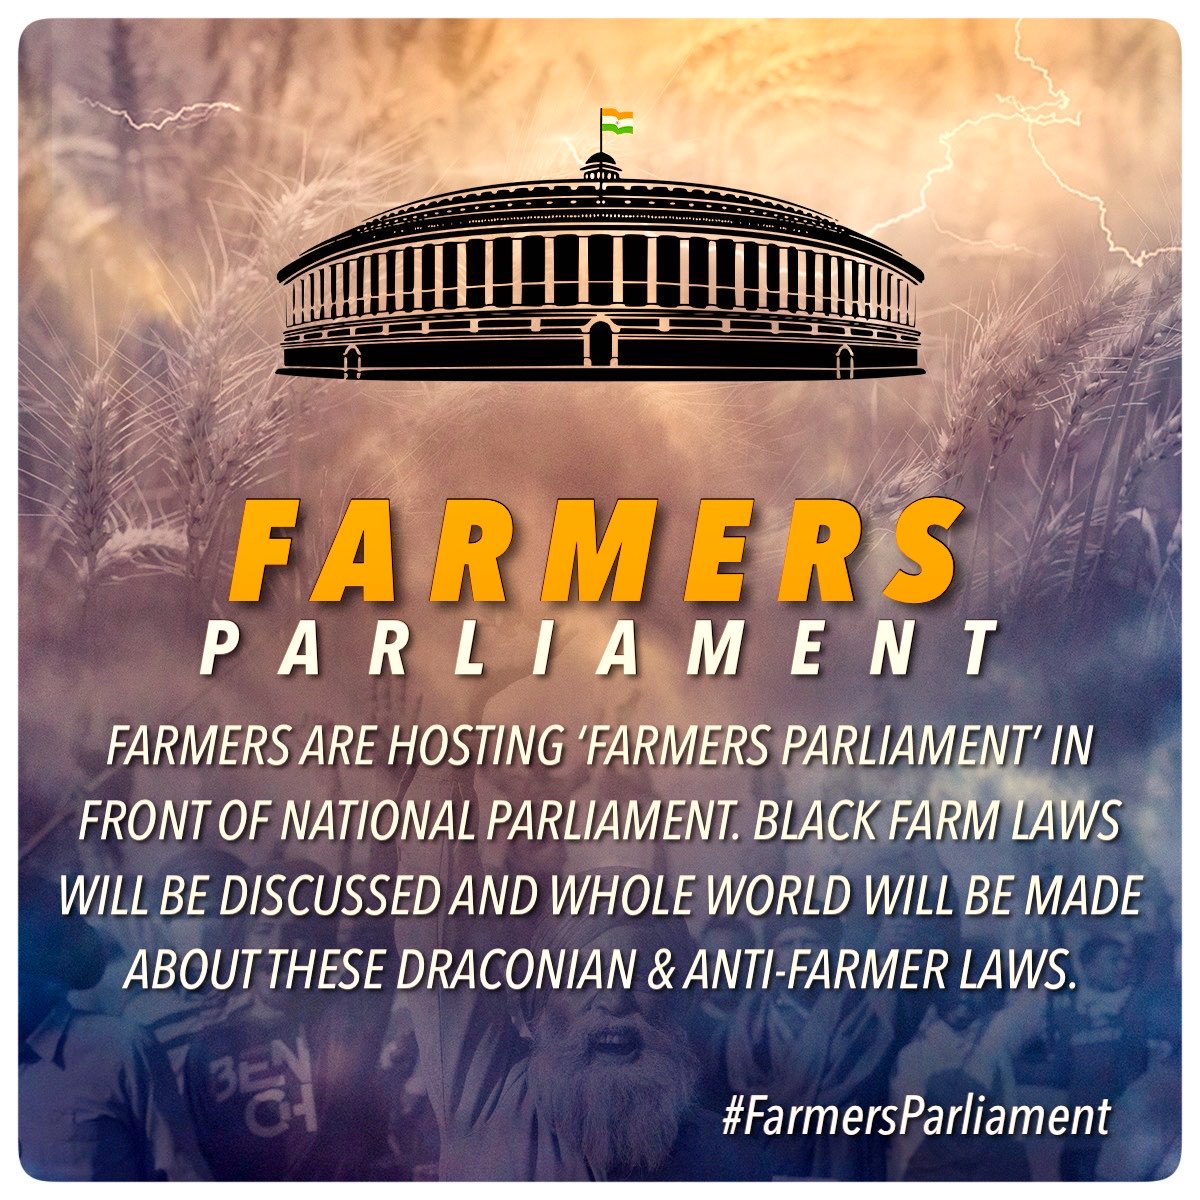 RT @Bhupendra612000: Tweet and Retweet
Today tagline

#FarmersParliament https://t.co/PqNSAaA6Bq